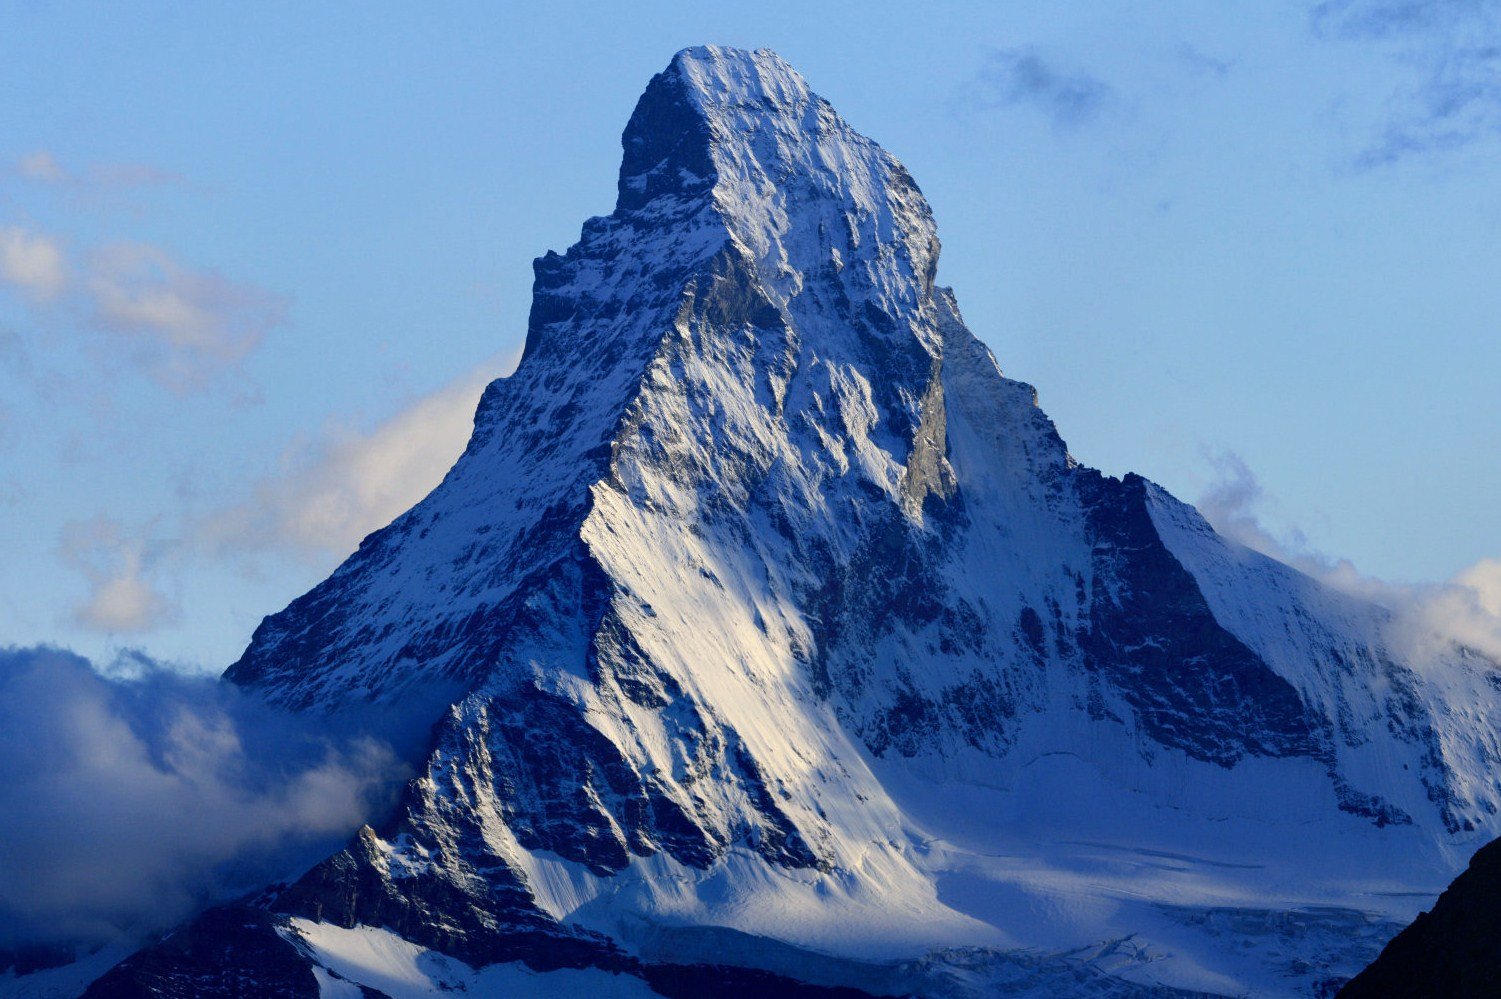 Matterhorn from Domhütte